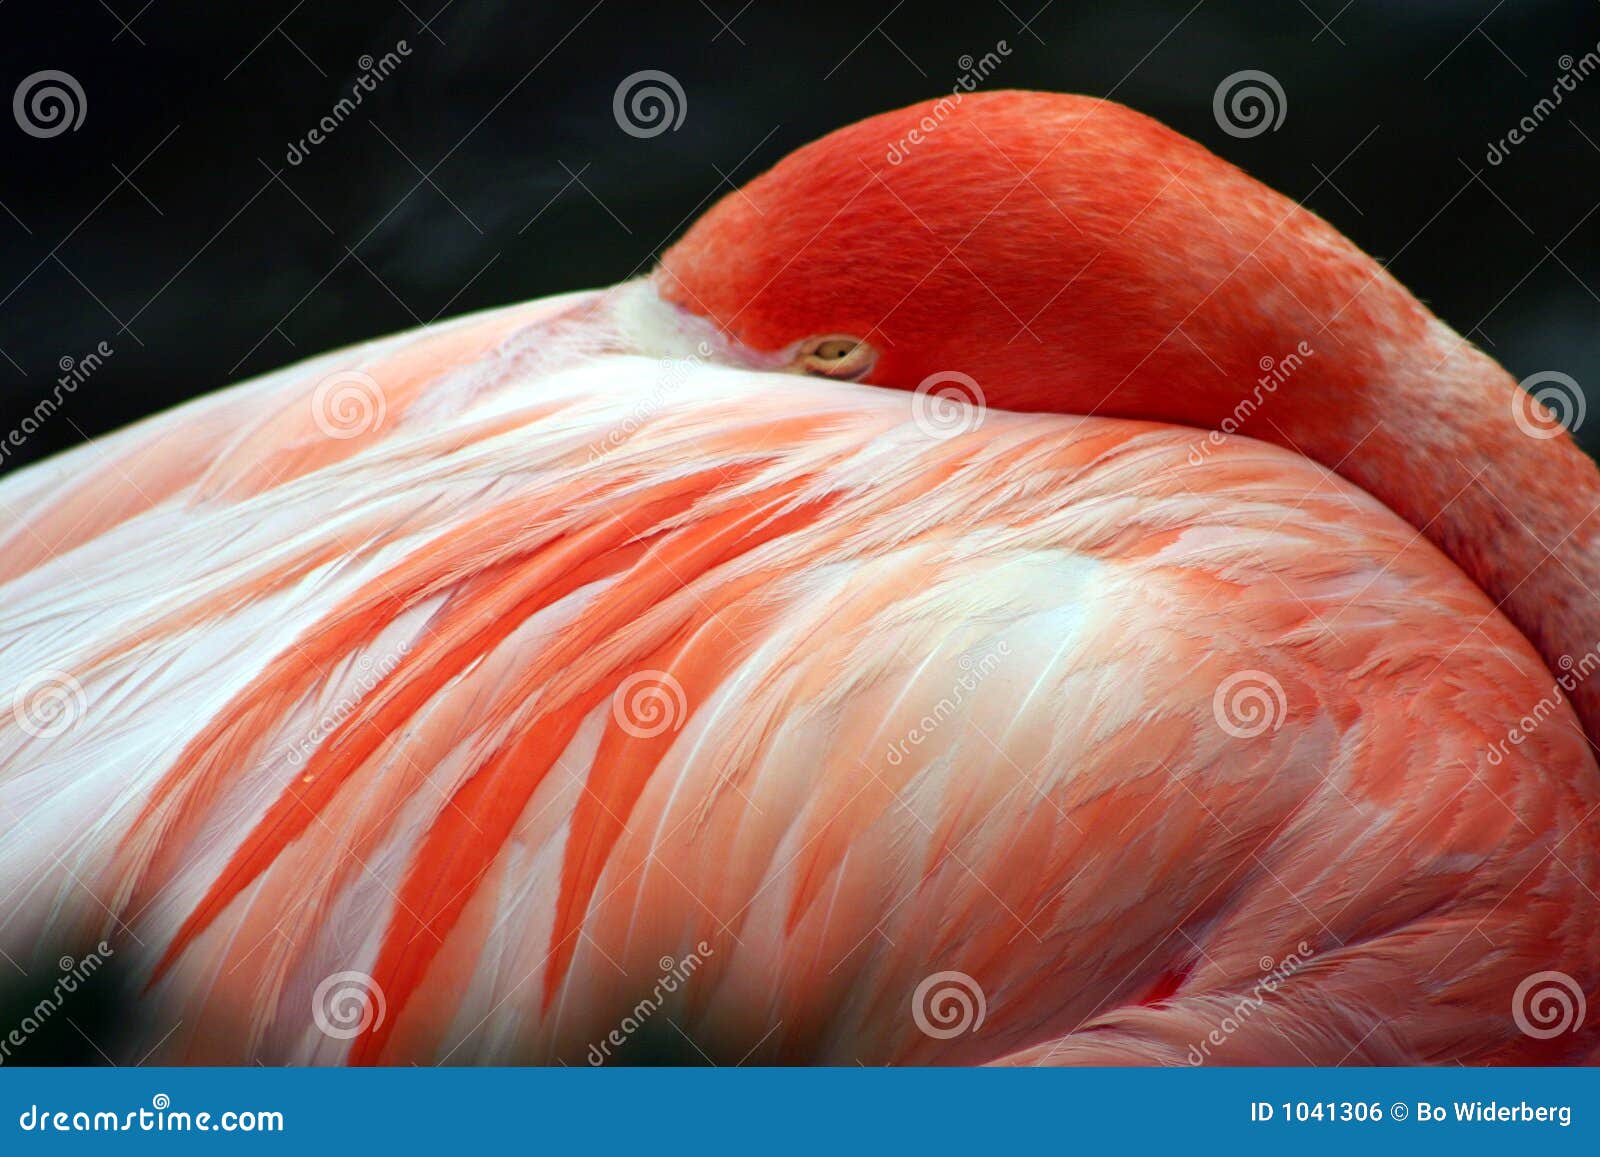 pink flamingo at sea world, orlando, florida